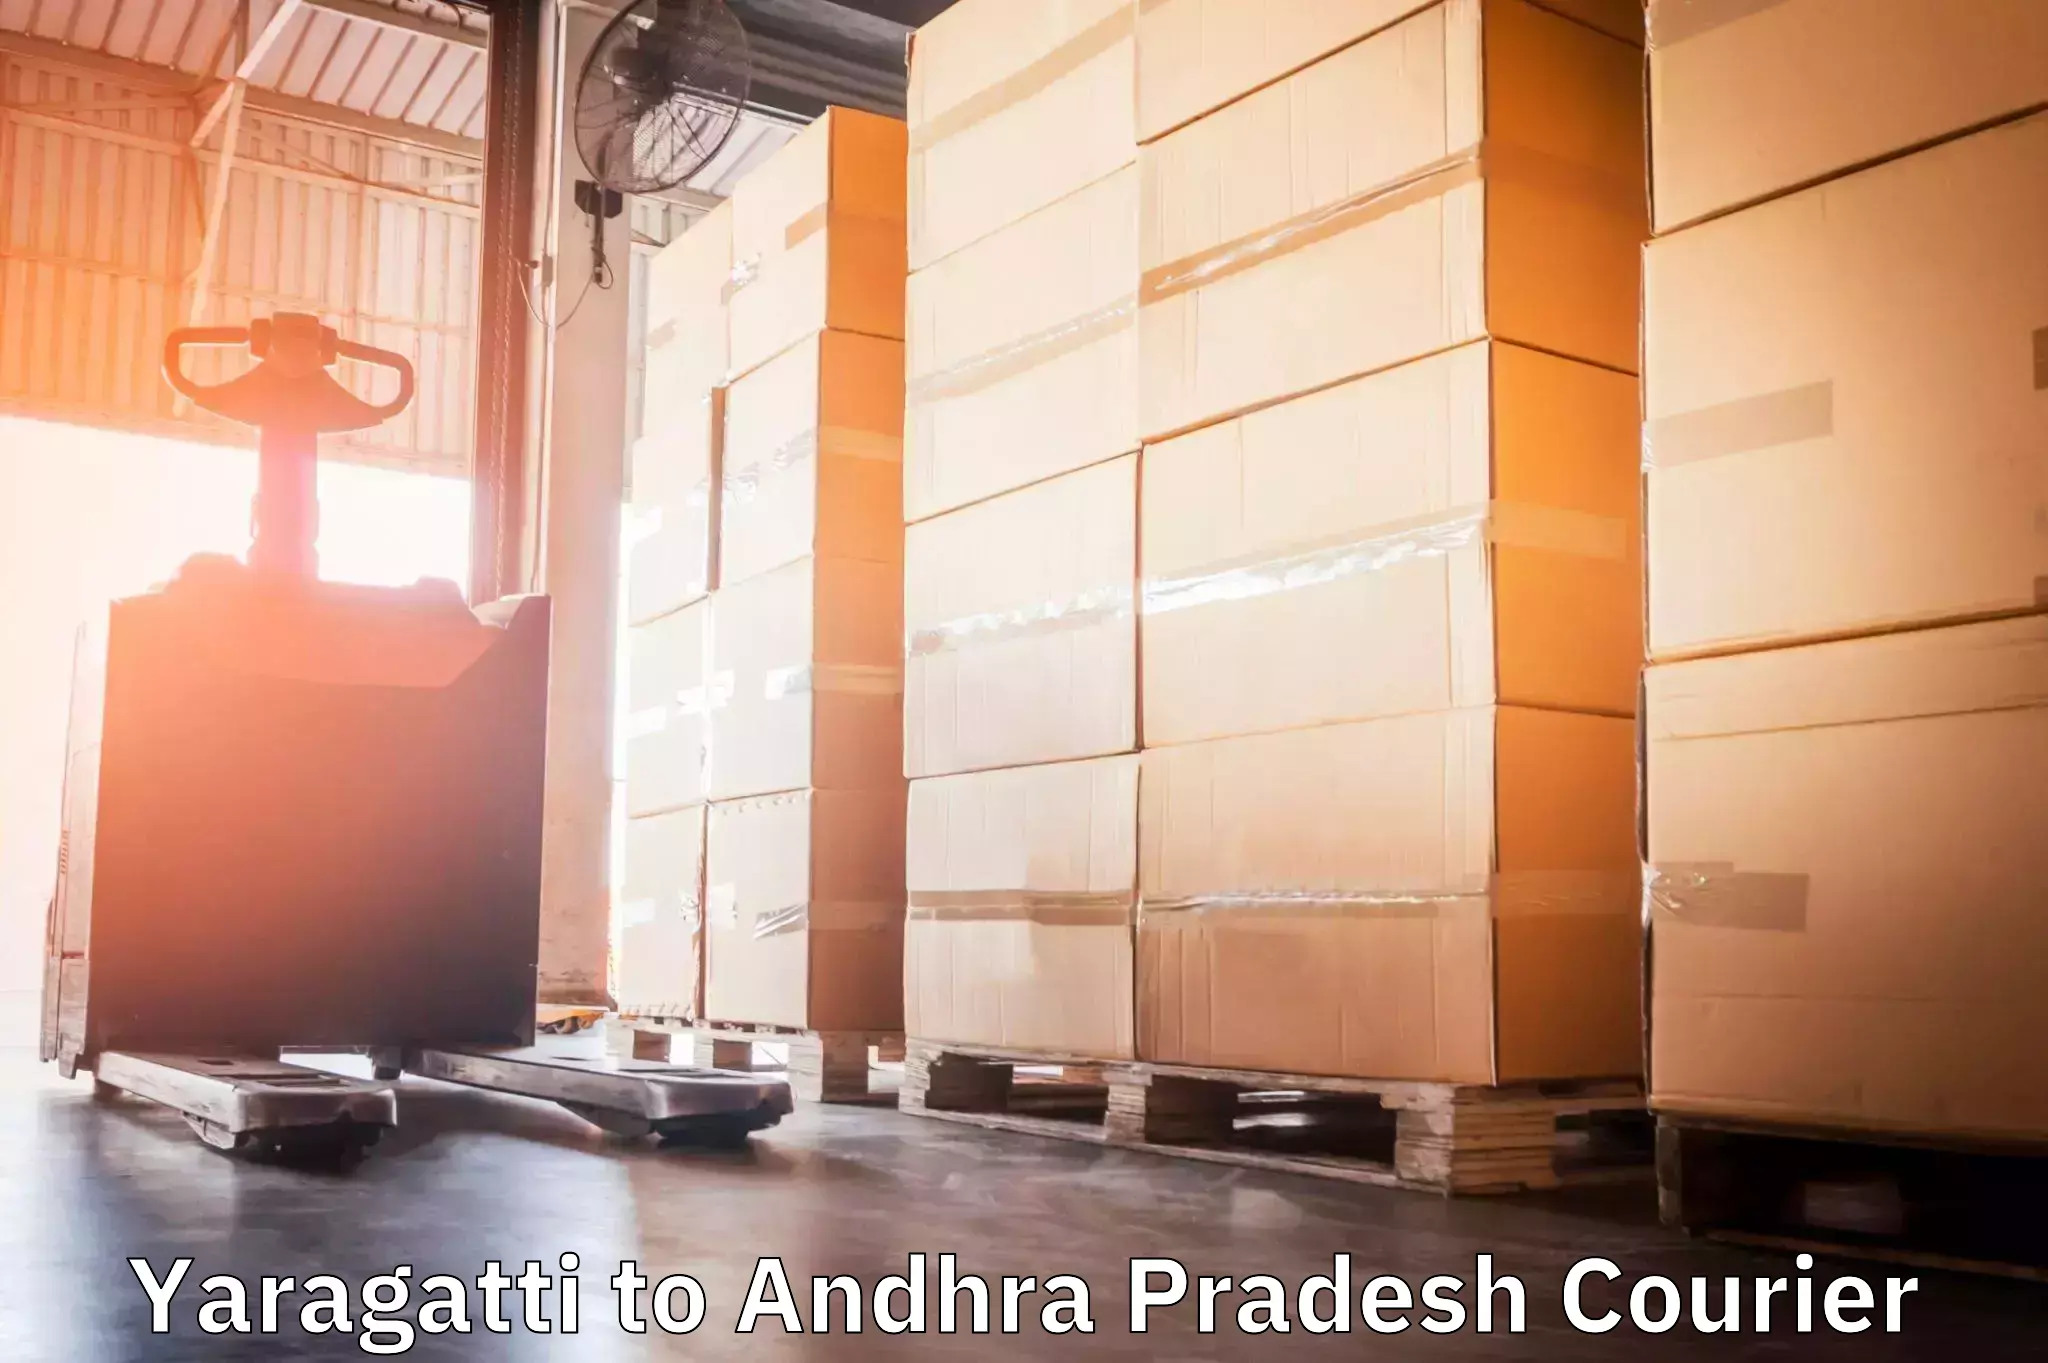 Customized shipping options Yaragatti to Andhra Pradesh